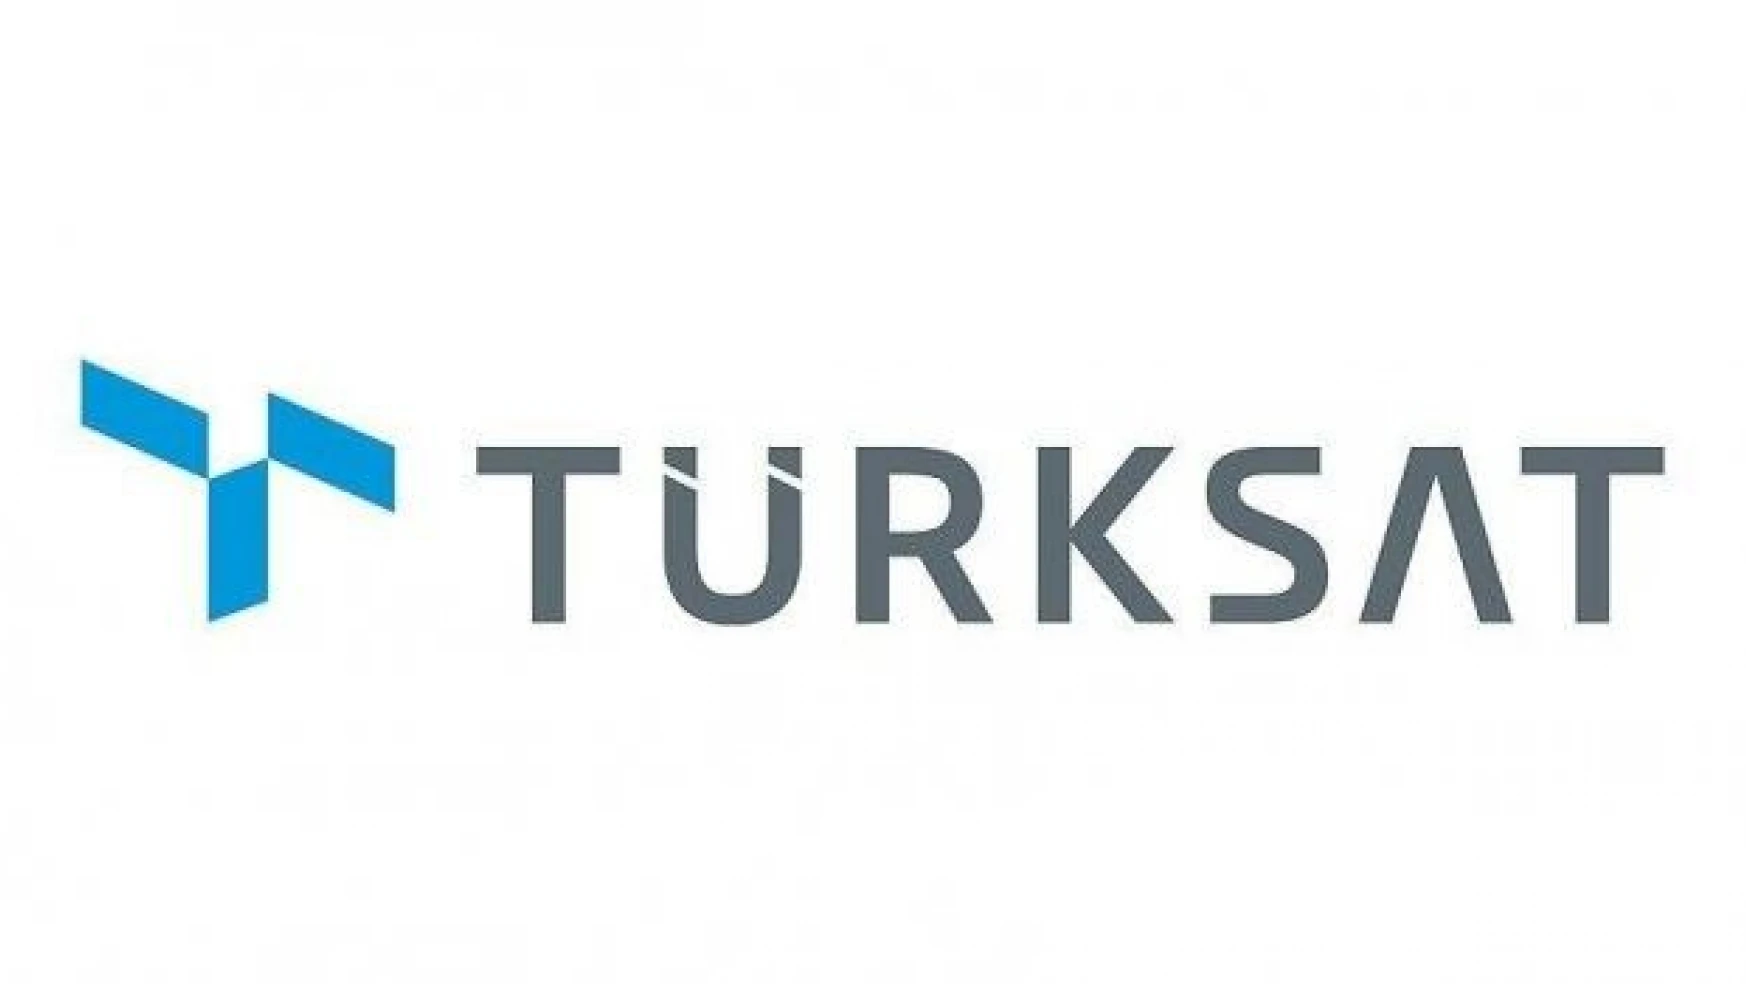 Türksat'tan yeni kampanyalar